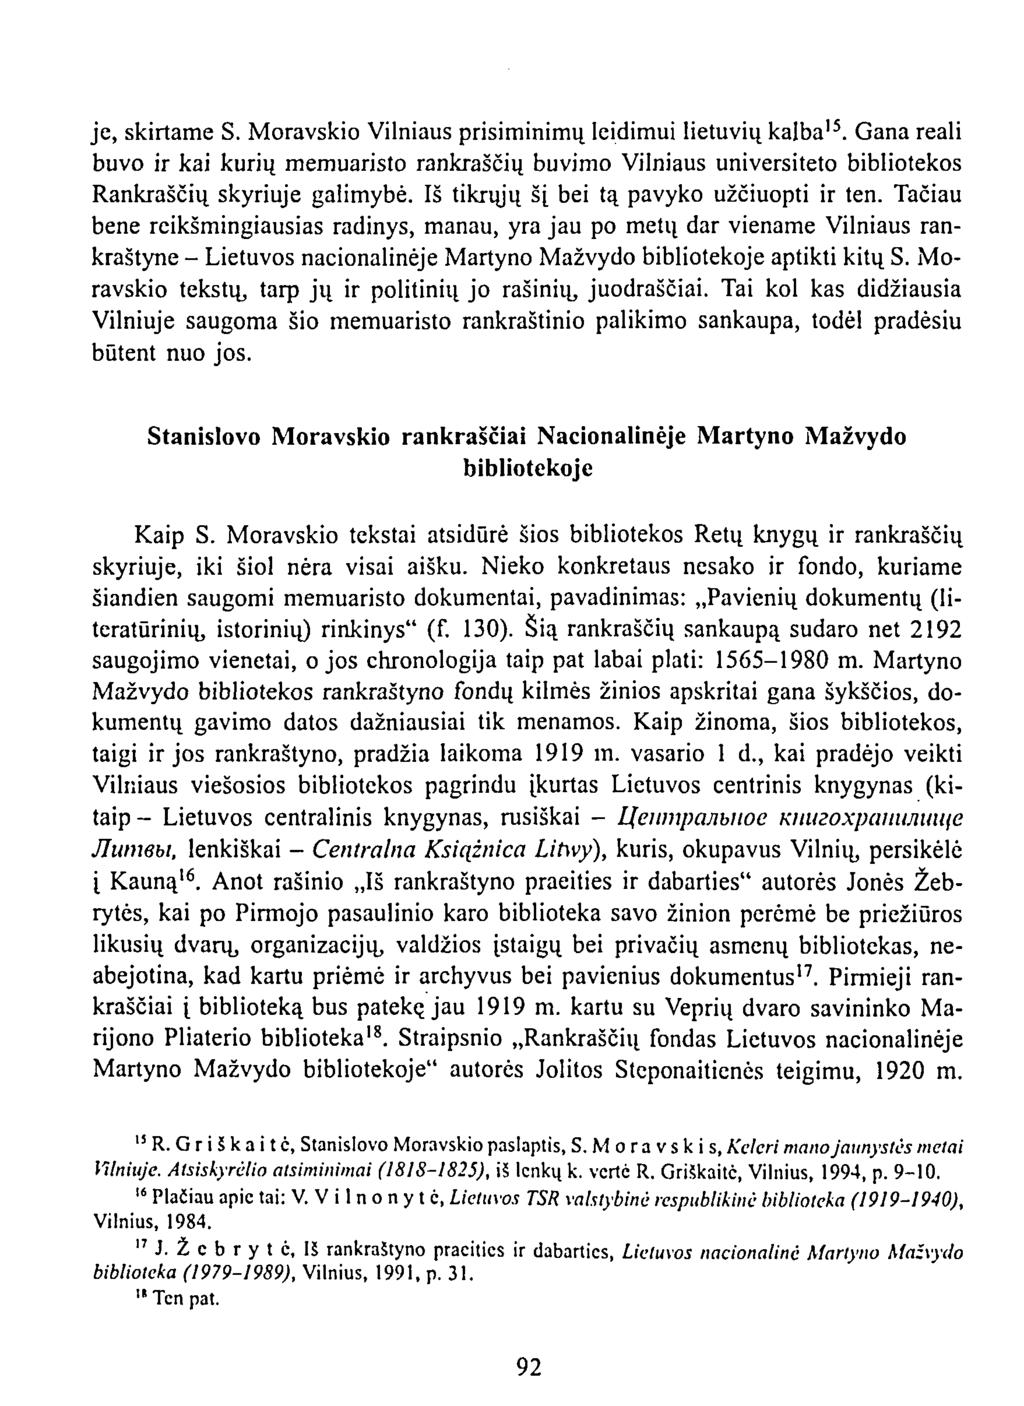 je, skirtame S. Moravskio Vilniaus prisiminimų leidimui lietuvių kalba 15. Gana reali buvo ir kai kurių memuaristo rankraščių buvimo Vilniaus universiteto bibliotekos Rankraščių skyriuje galimybė.